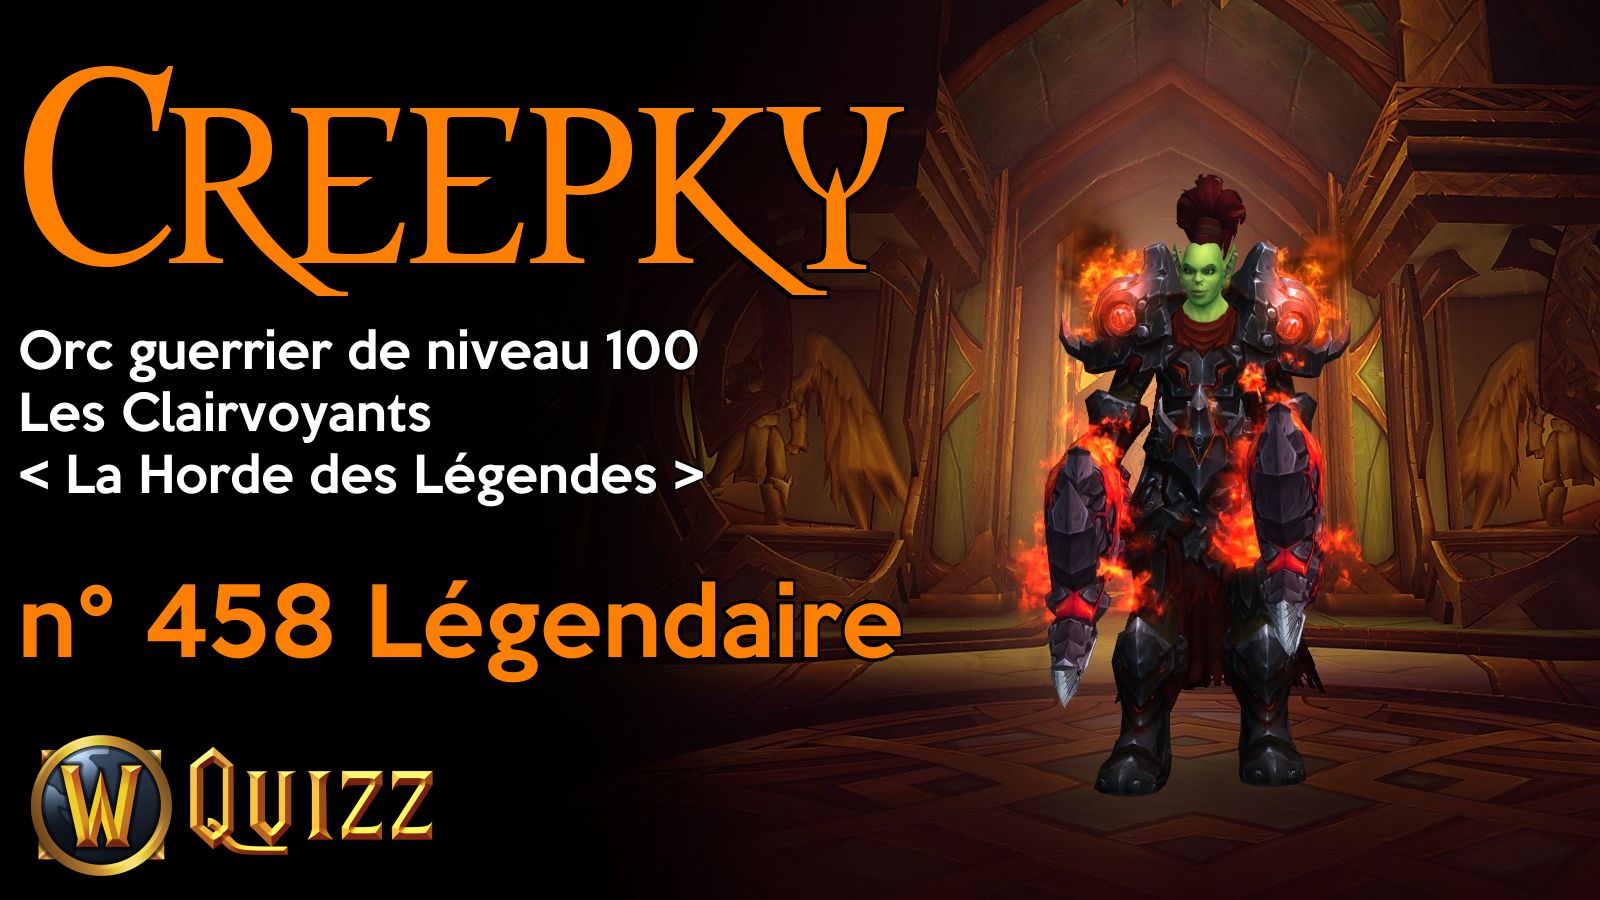 Creepky, Orc guerrier de niveau 100, Les Clairvoyants